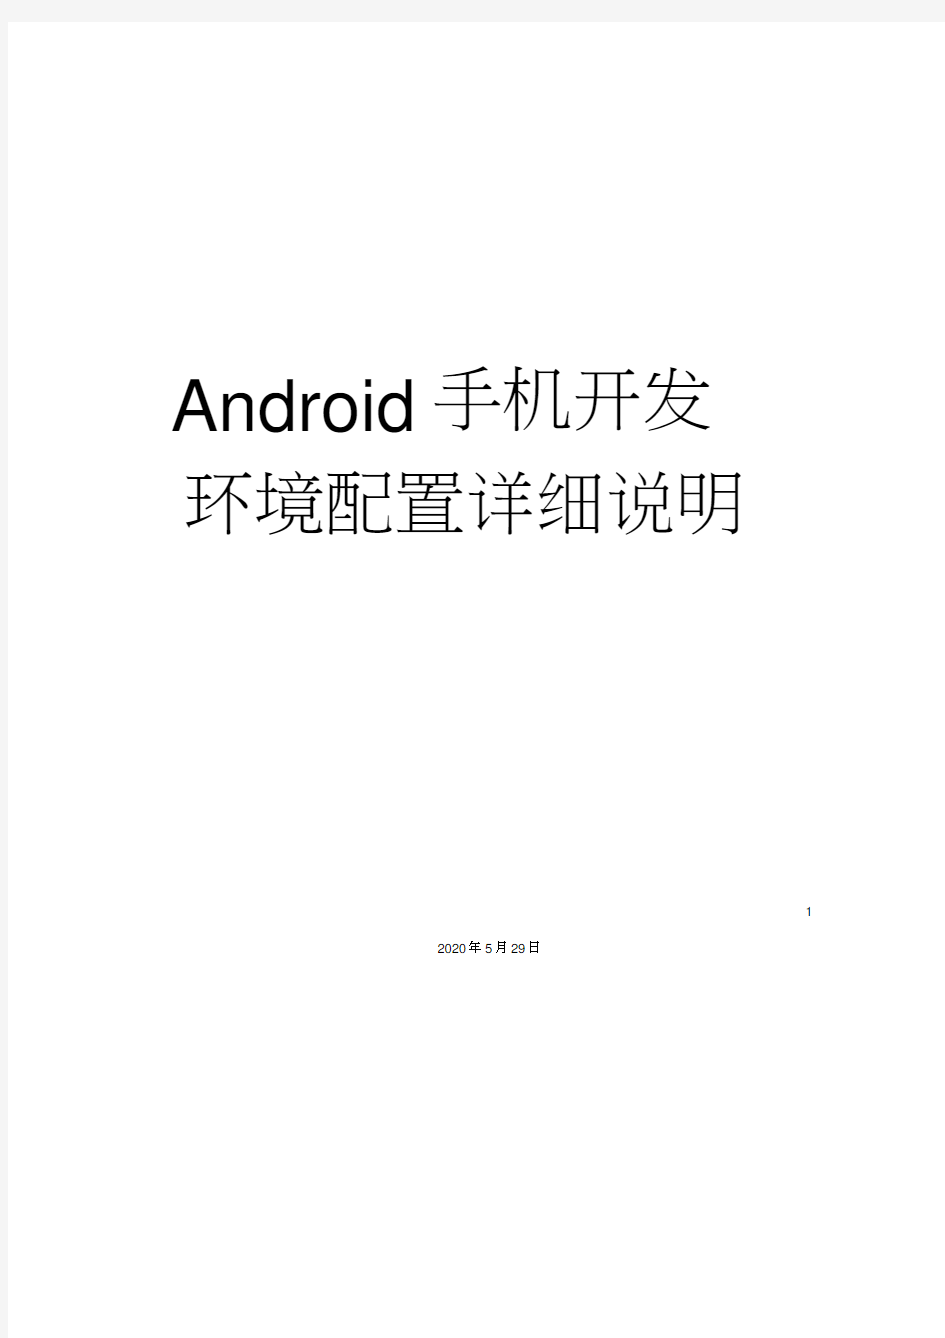 Android手机开发环境配置详细说明书